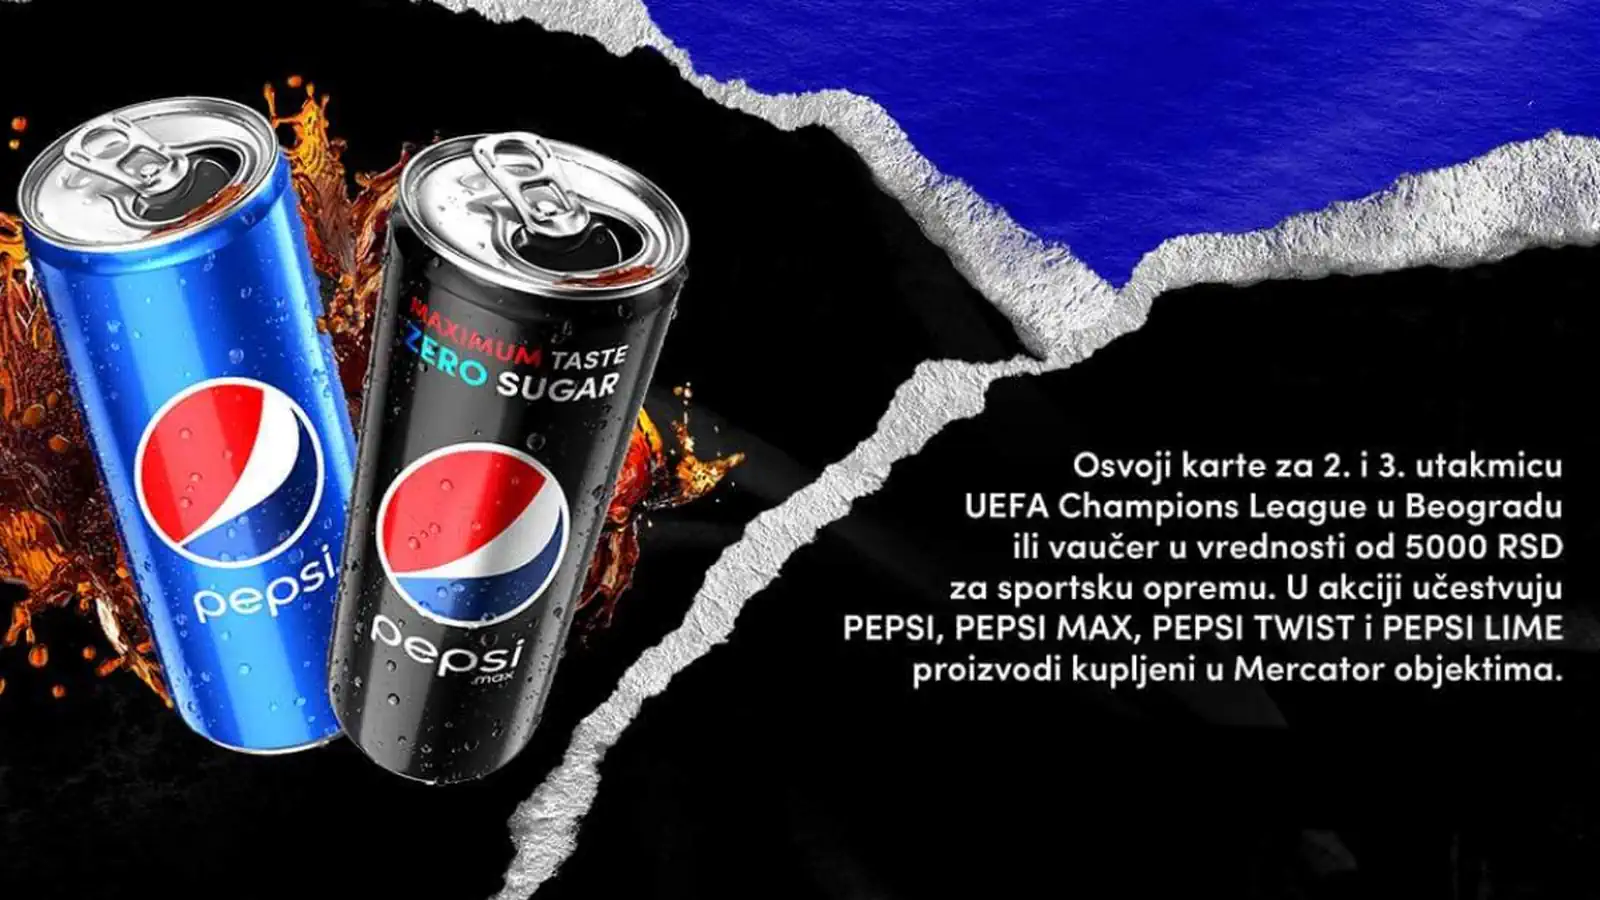 Pepsi nagradna igra: Prati svoj ukus i osvoji!